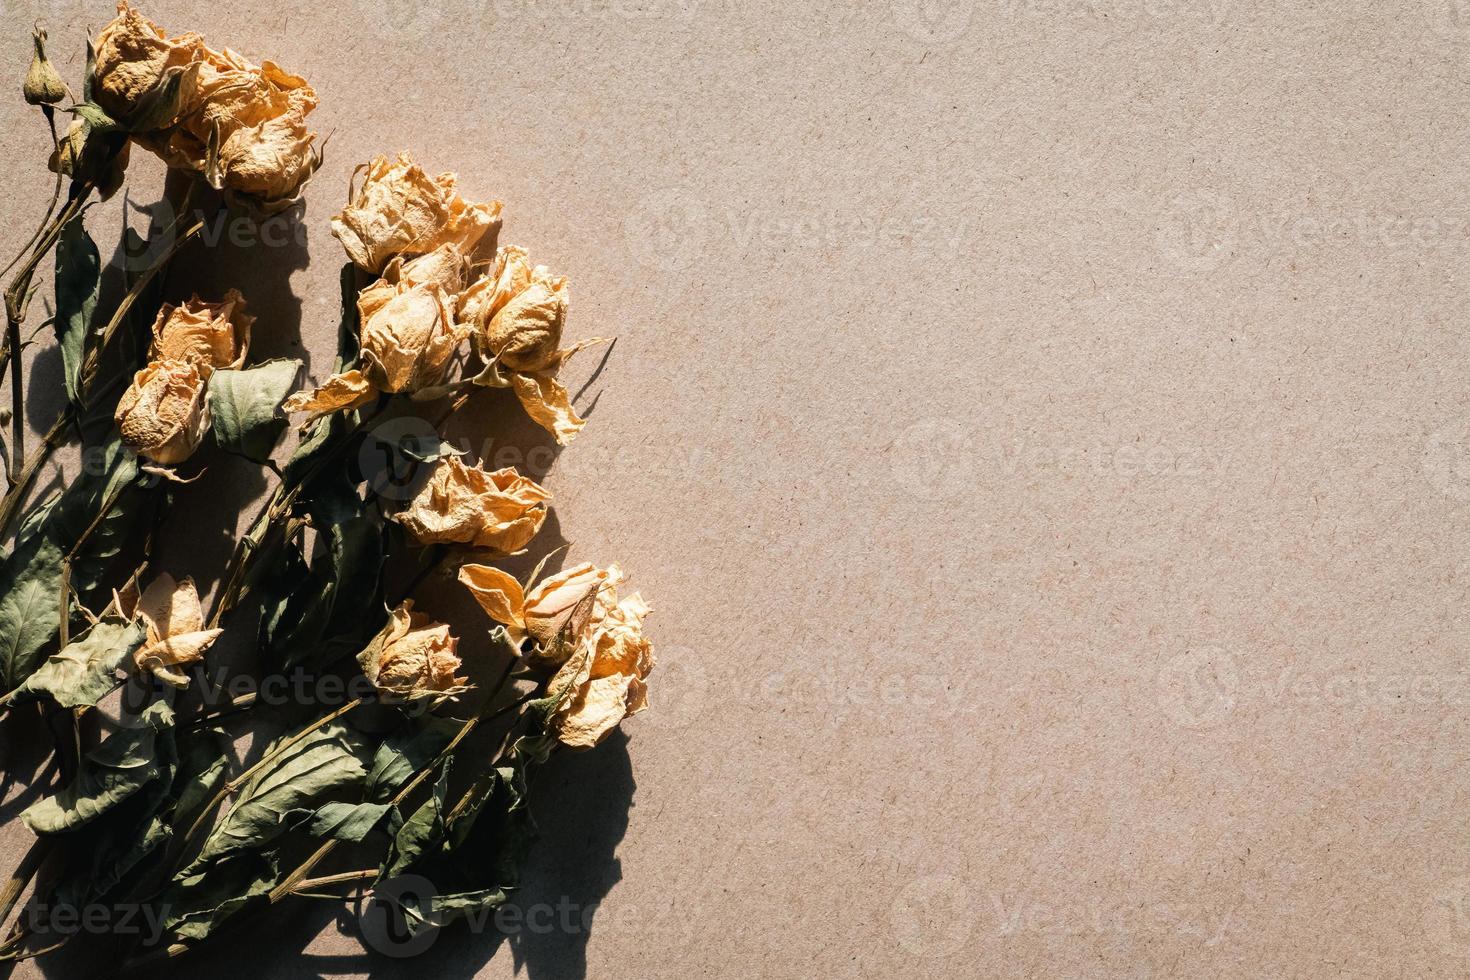 fleurs séchées sur texture de papier carton beige, fond rétro clair et ombré, espace copie photo